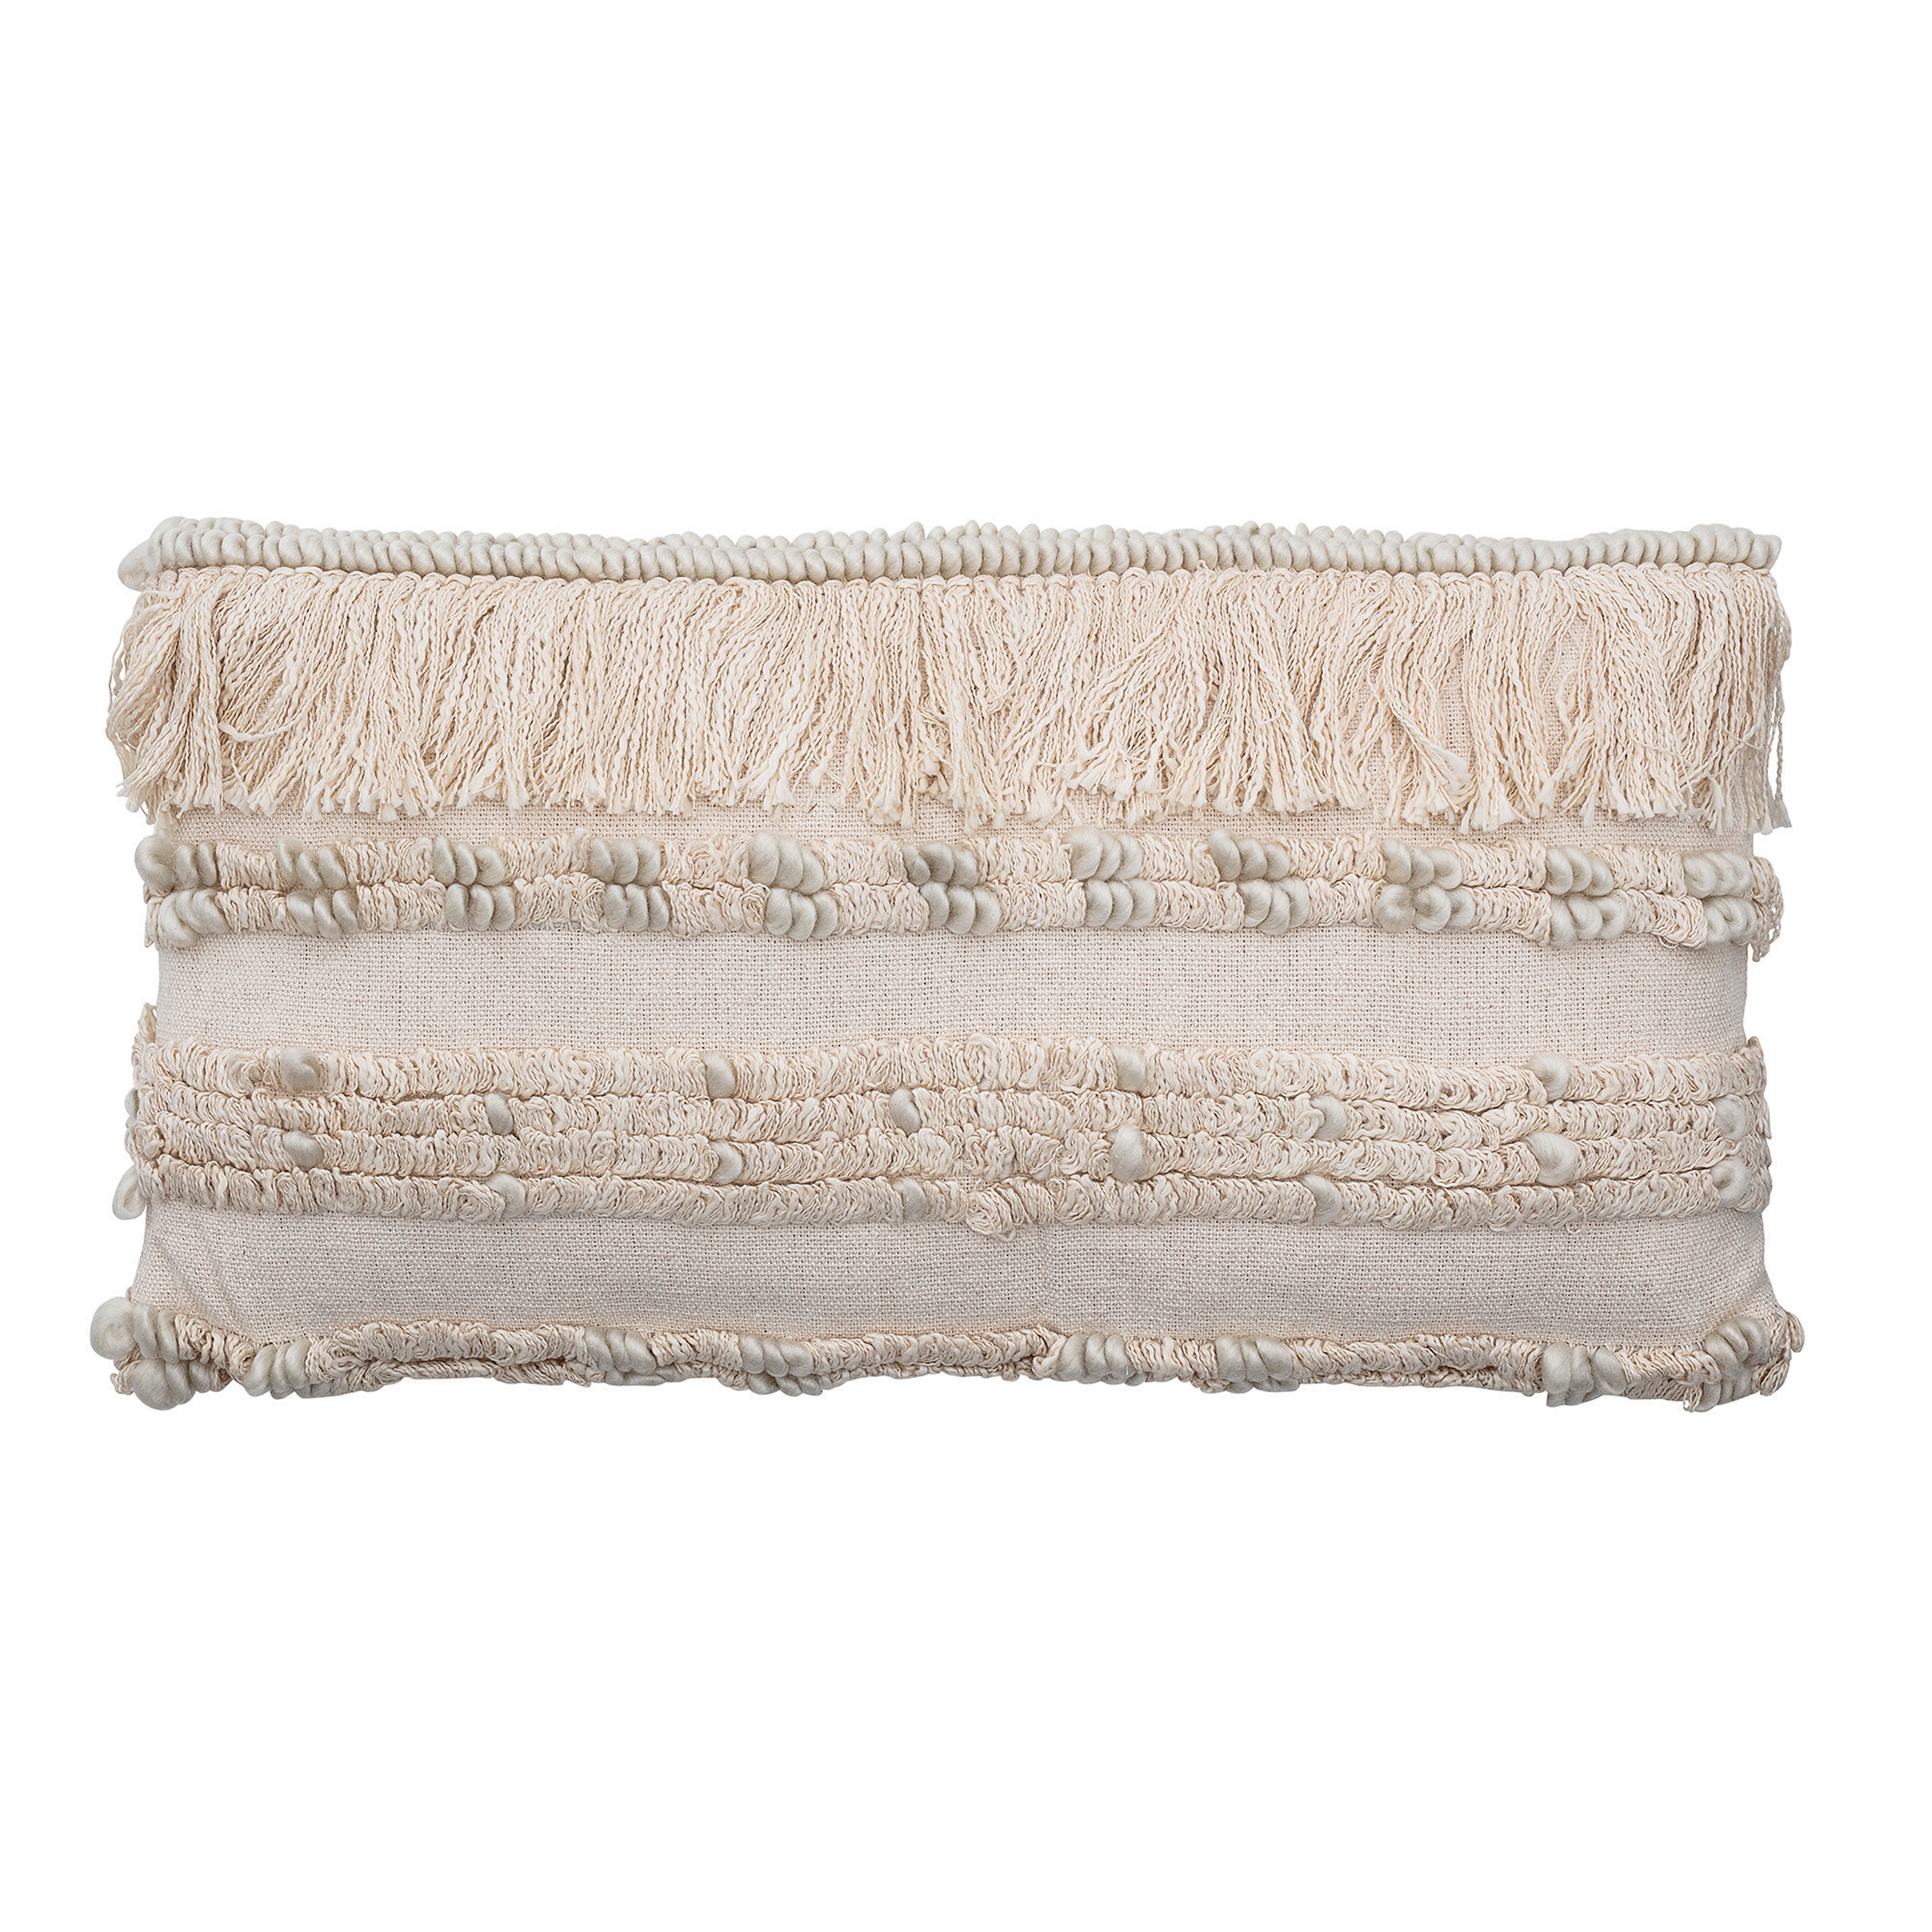 28" Woven Cotton & Wool Blend Lumbar Pillow with Fringe - Moss & Wilder